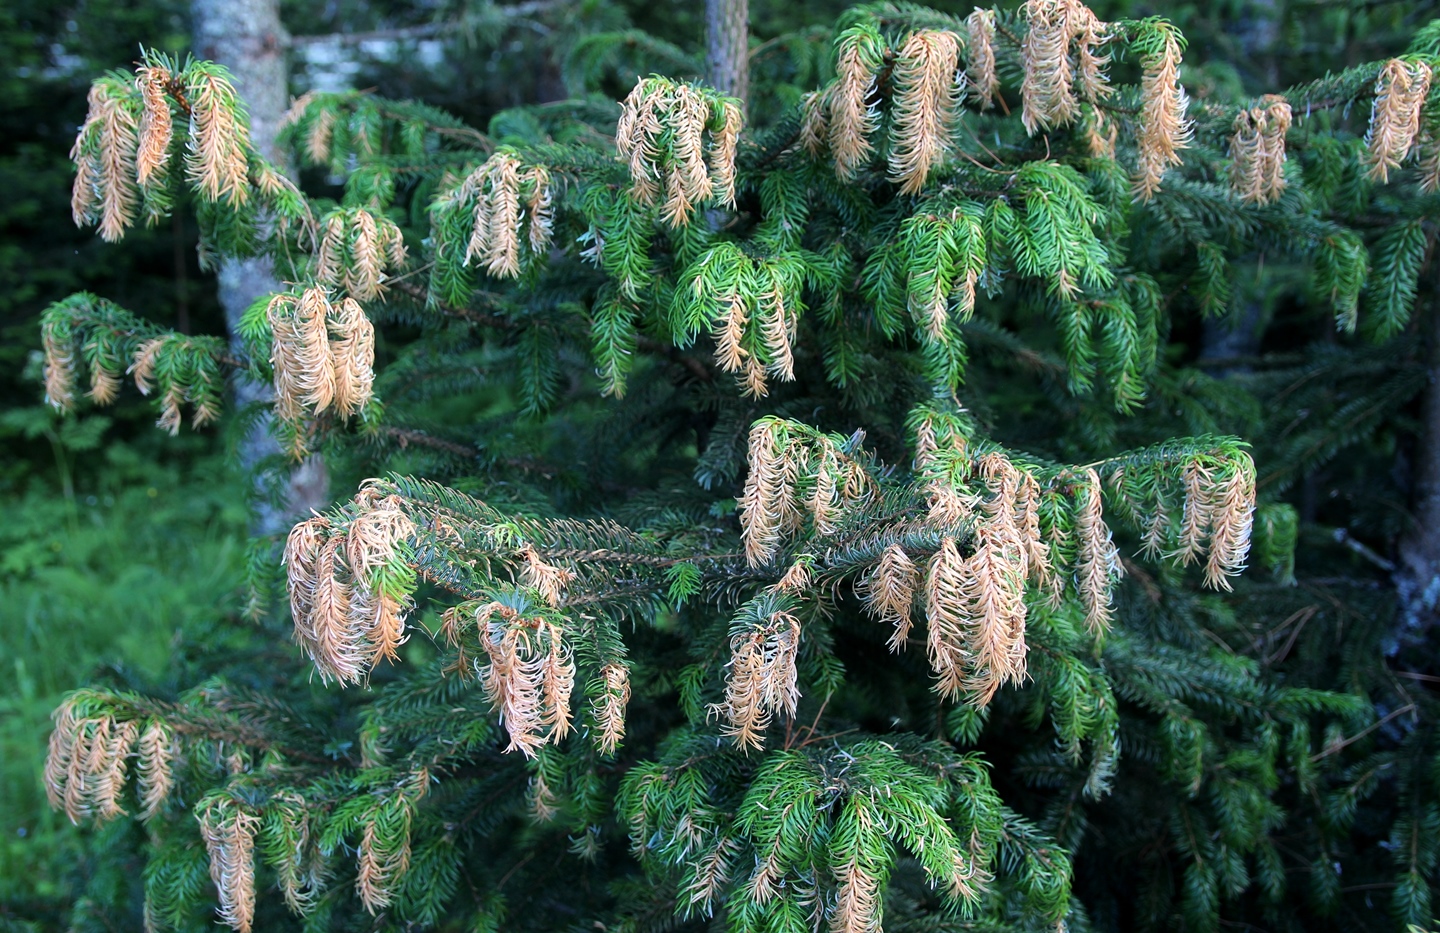 Другой дальневосточный вид, ель аянская (Picea jezoensis) заходит довольно далеко на север, вплоть до юго-востока Якутии. Поэтому наши сибирские морозы ей нипочем. Но весенний рост побегов у нее начинается очень рано. Поэтому она часто повреждается весенними заморозками.  